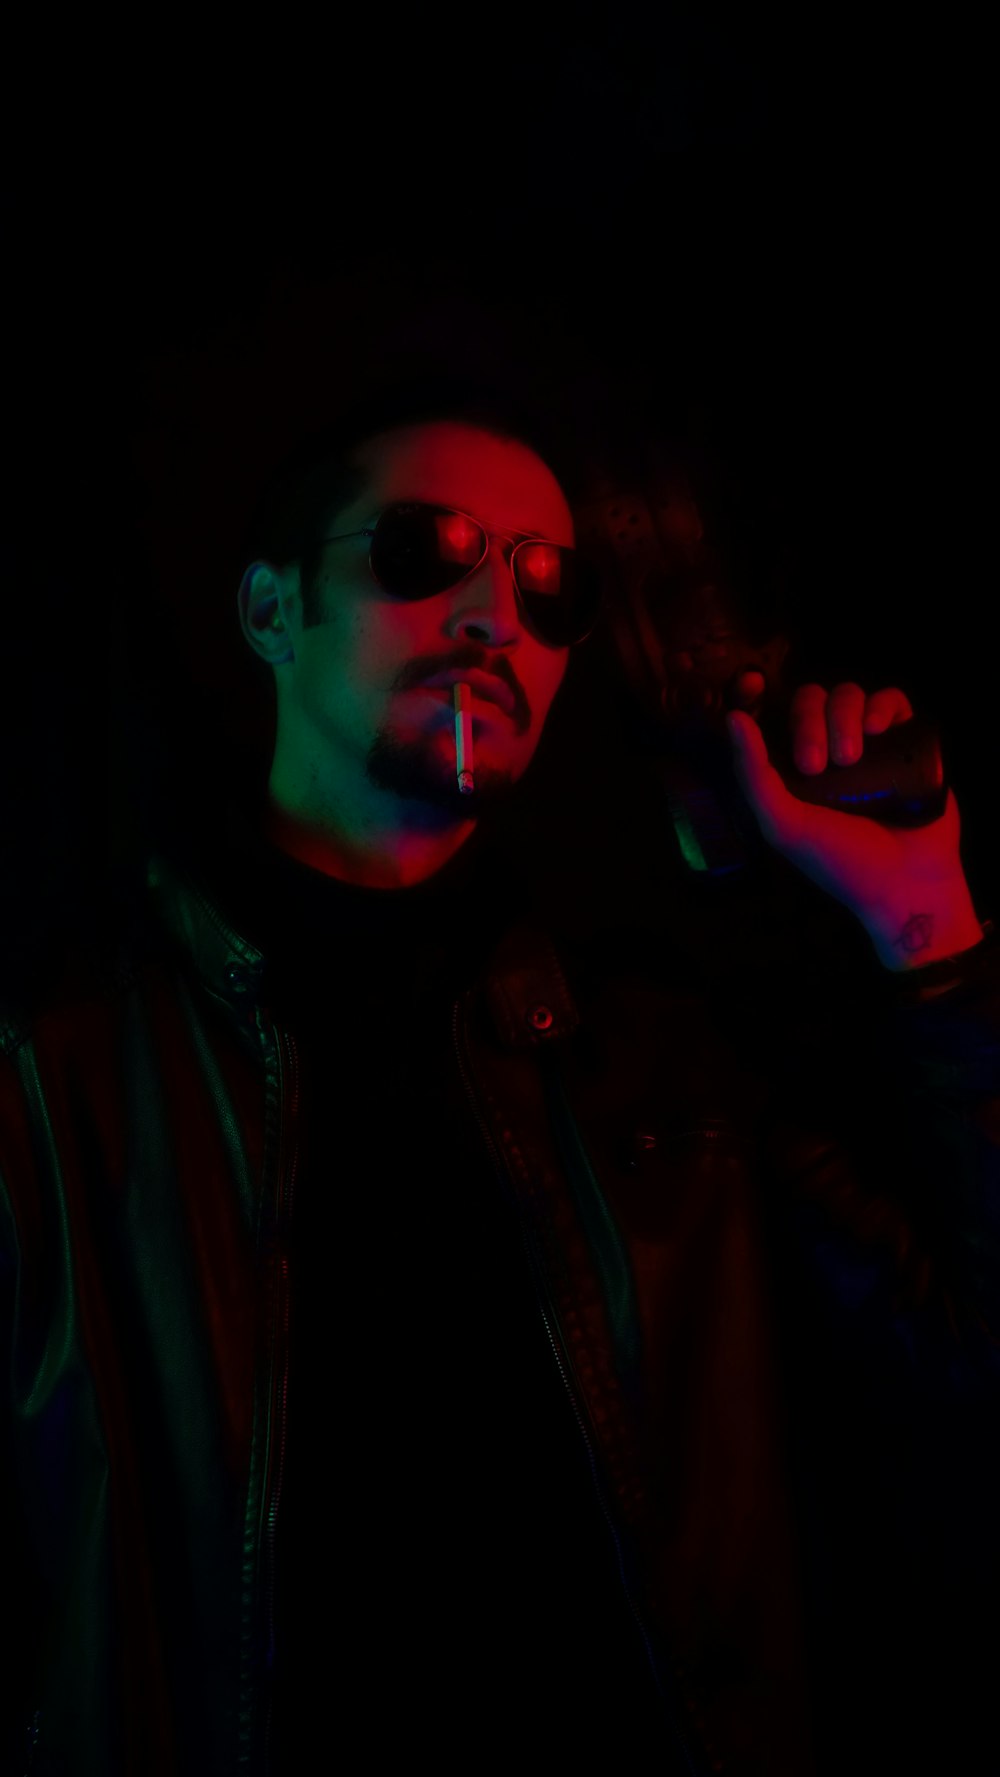 Un hombre fumando un cigarrillo en la oscuridad